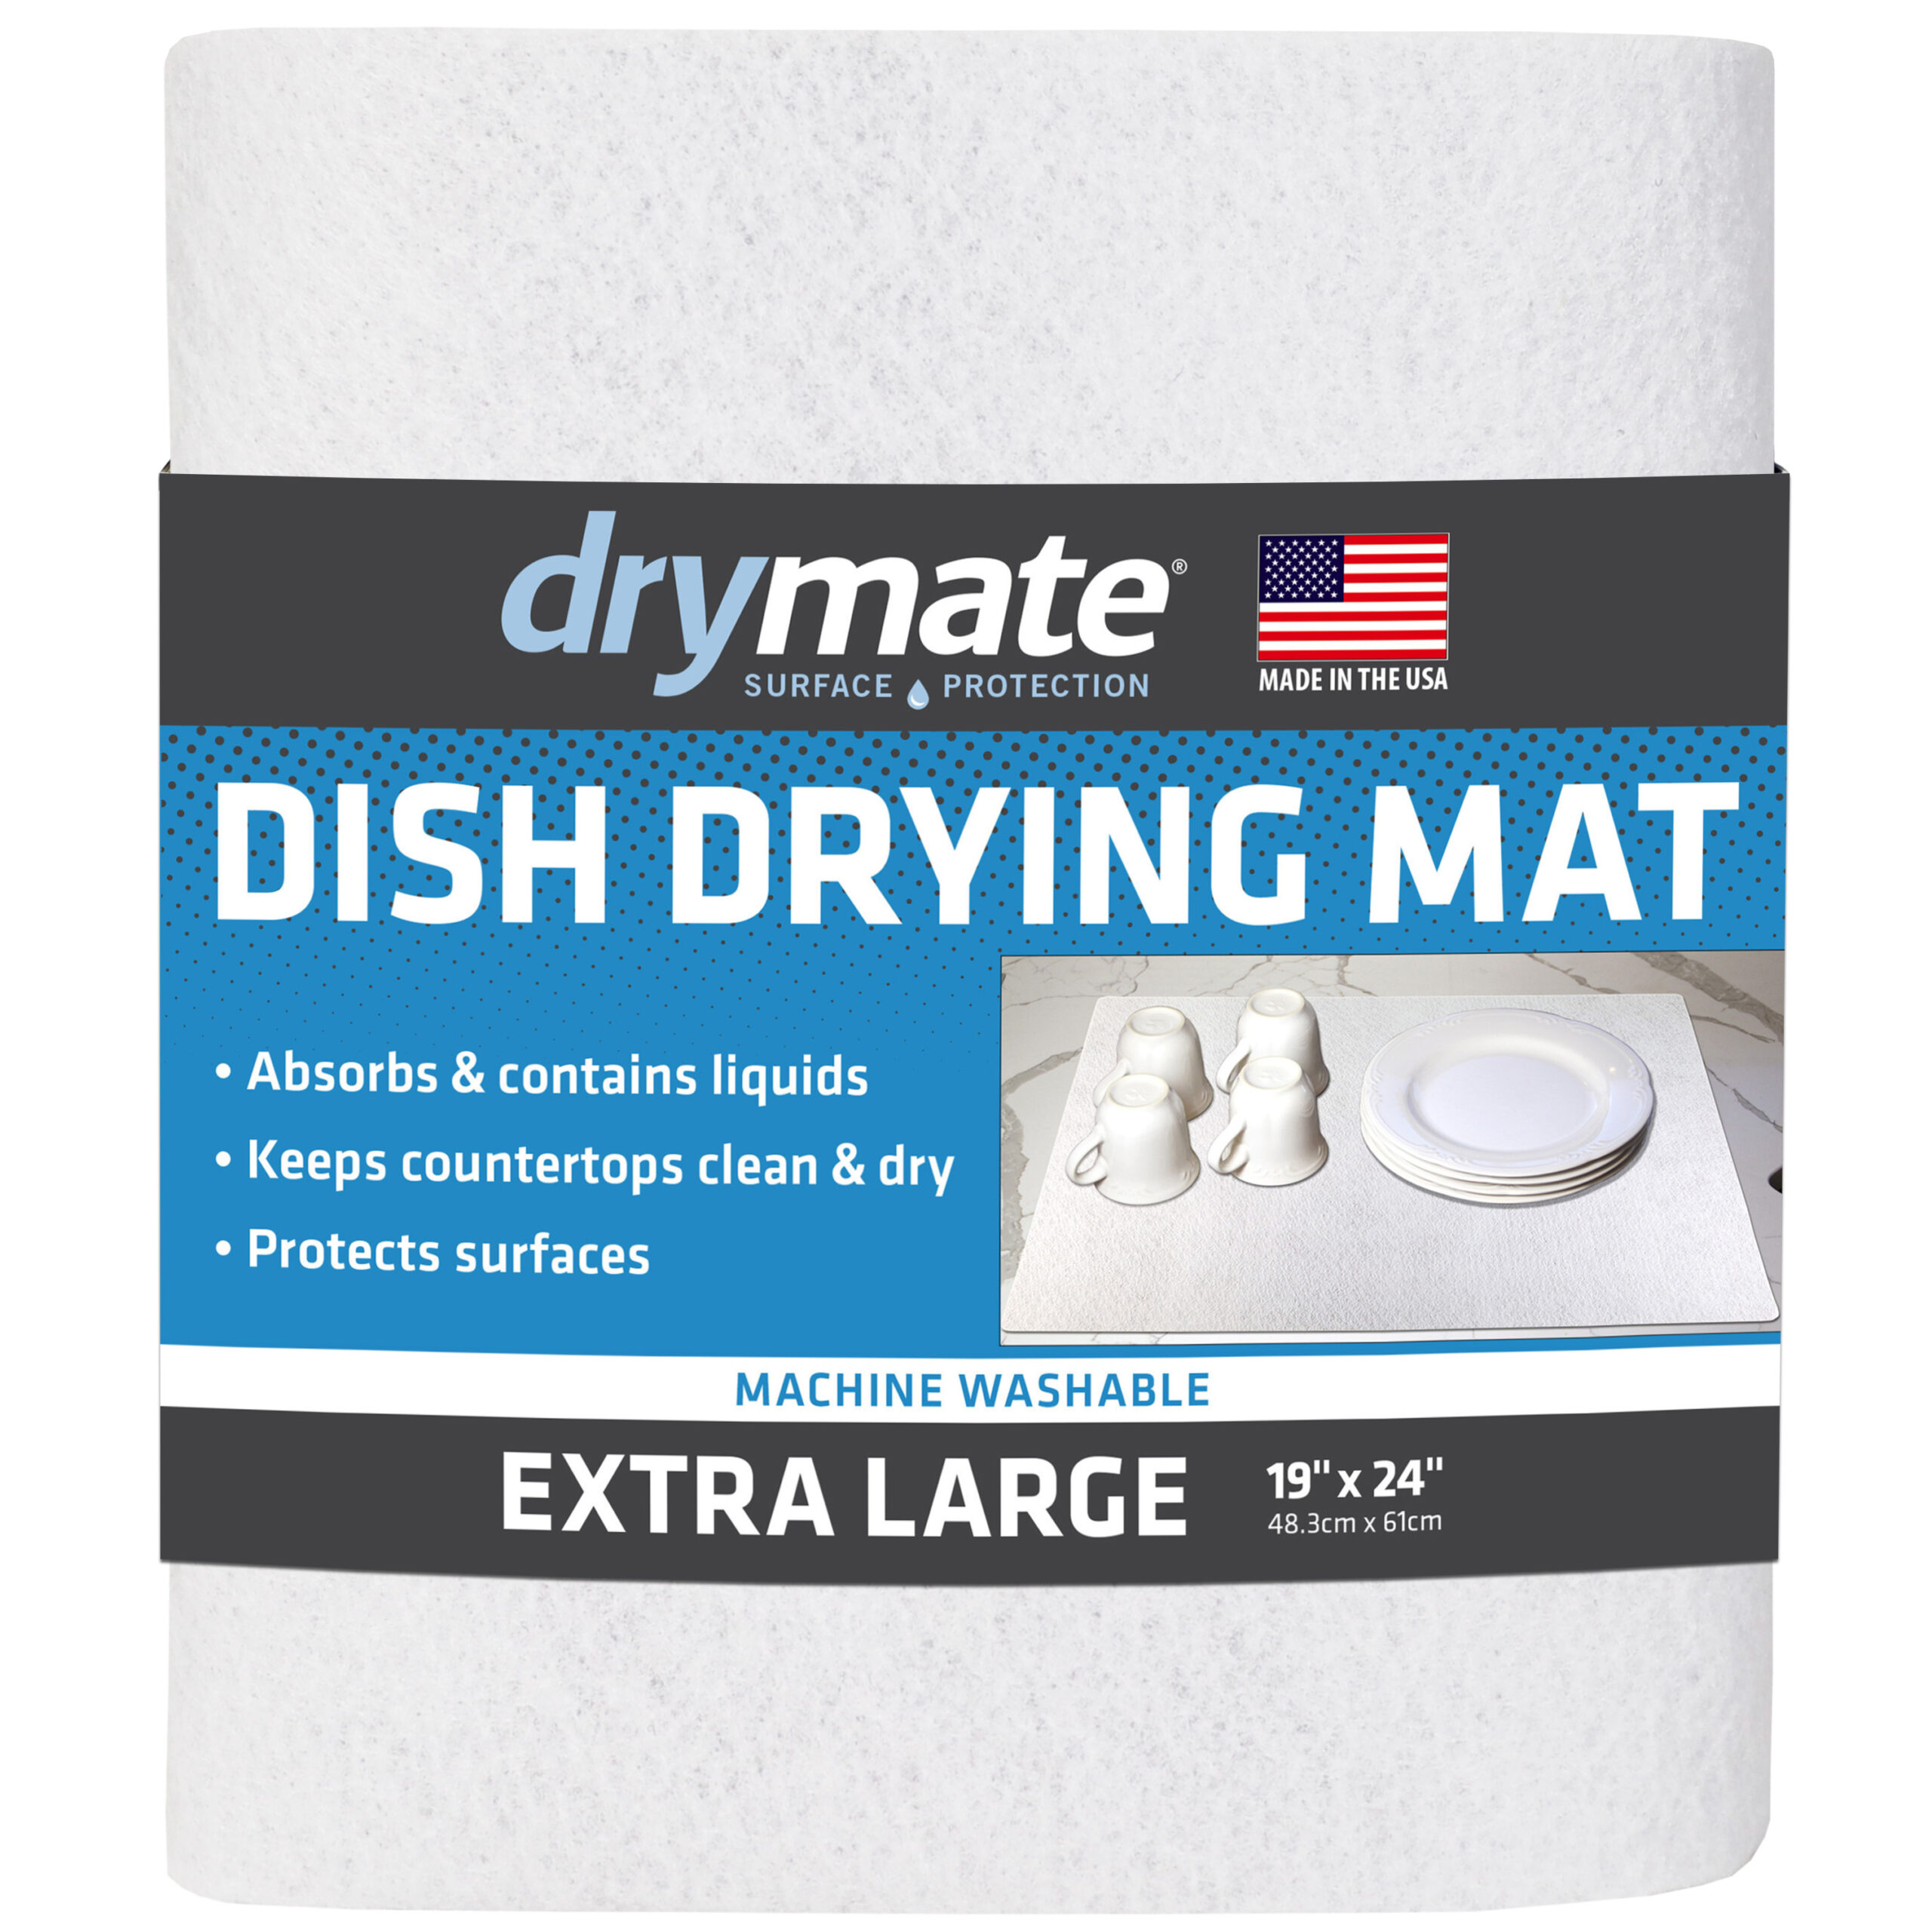 KDIJET Dish Drying Mat 2 Pack XL Cream Cross Sculpted Microfiber Ultra Absorbent Kitchen Drying Mat